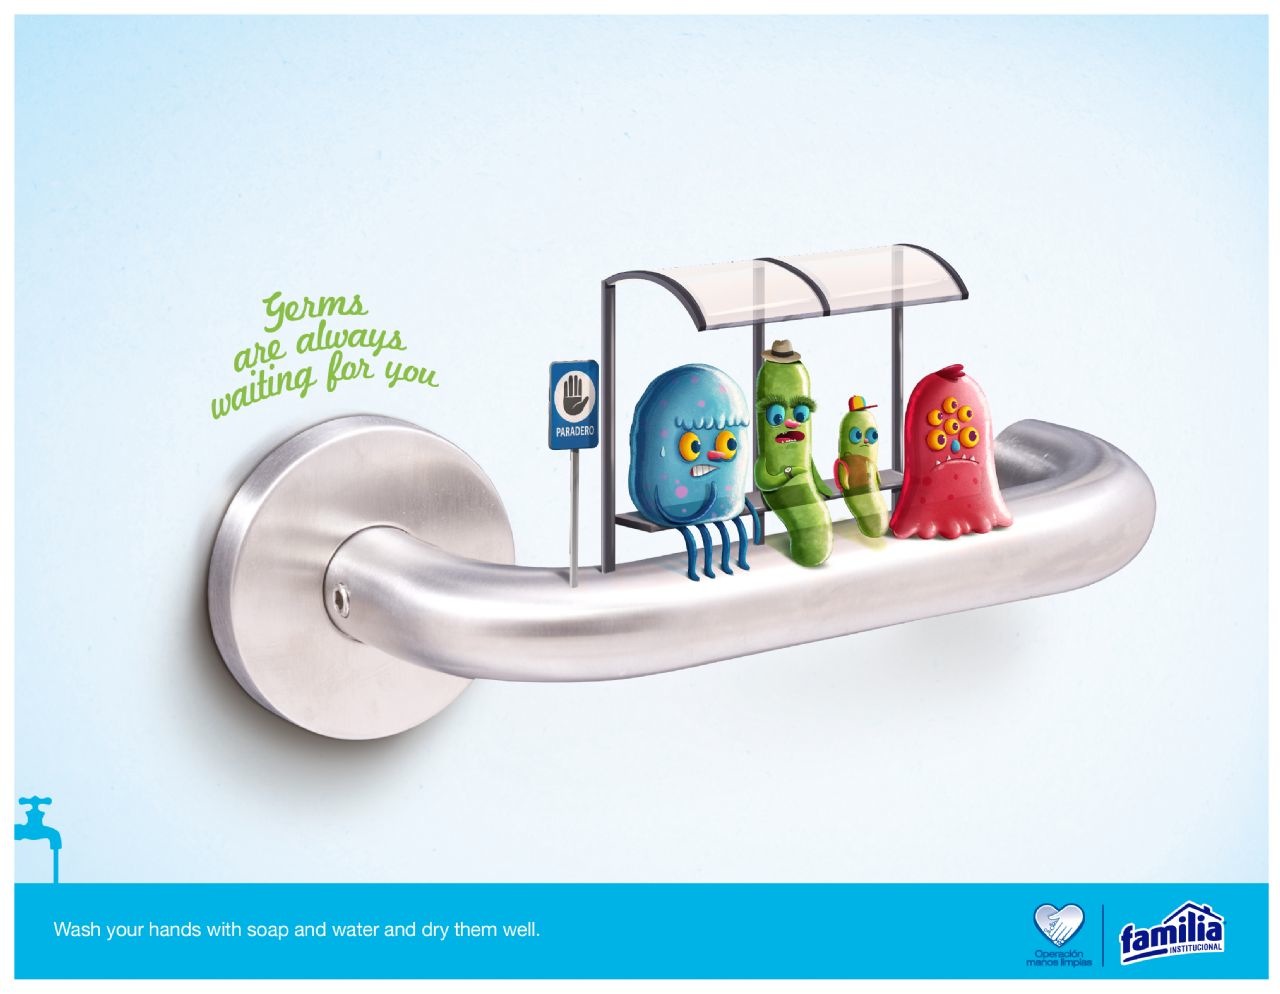 上海广告设计公司：Familia 洗手液肥皂平面广告创意设计1-洗手间篇